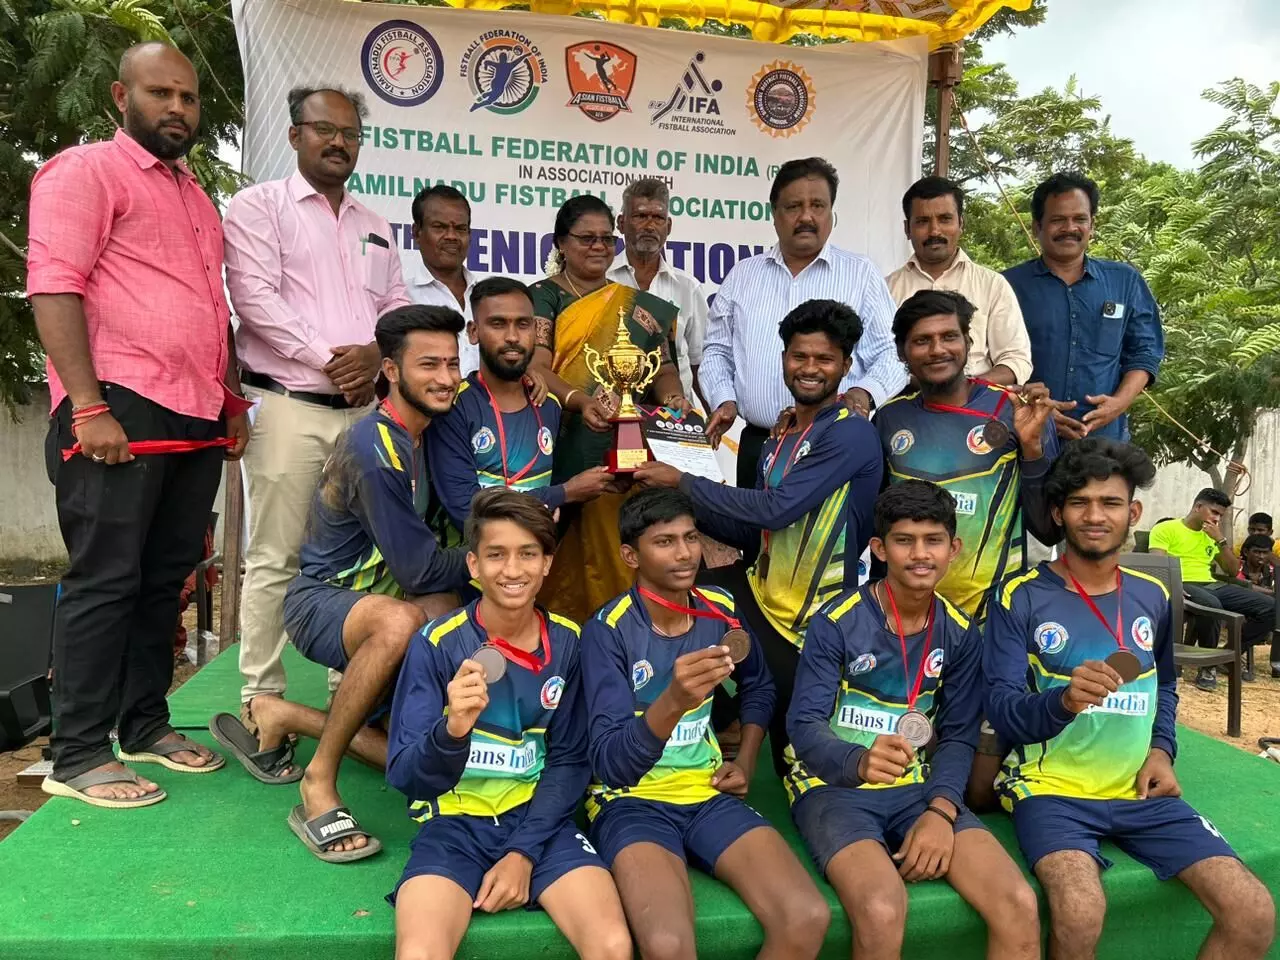 Telangana students make mark at Fistball Championship in Chennai